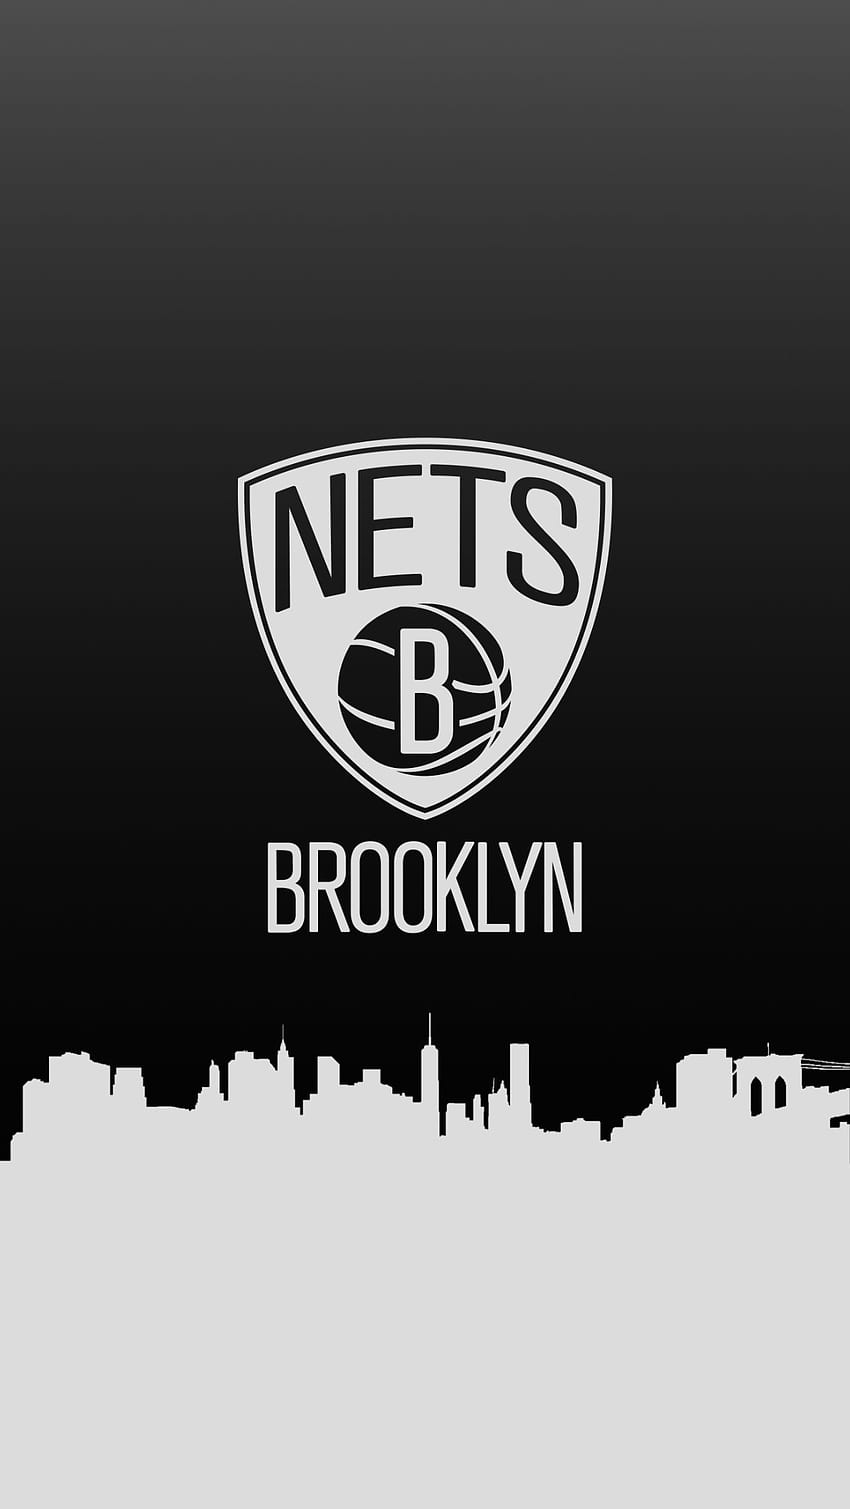 ブルックリン ネッツ NBA バスケットボールのアイデア。 ブルックリン バスケットボール、ブルックリン ネッツ、NBA チーム HD電話の壁紙